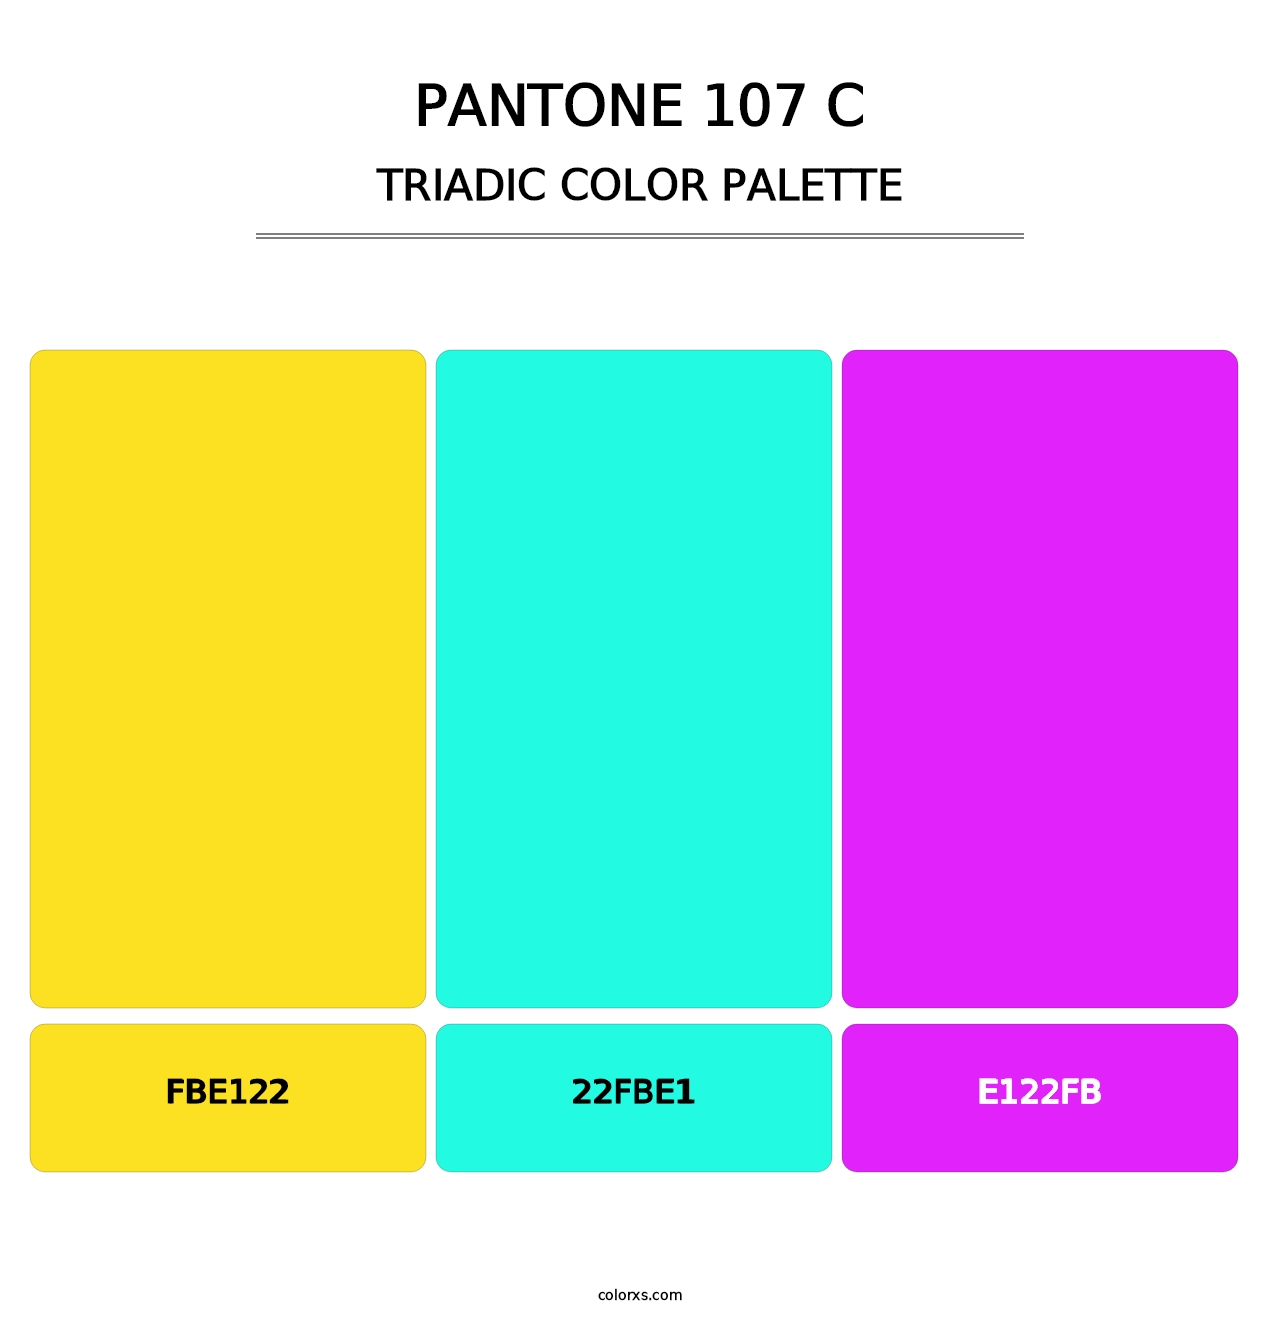 PANTONE 107 C - Triadic Color Palette